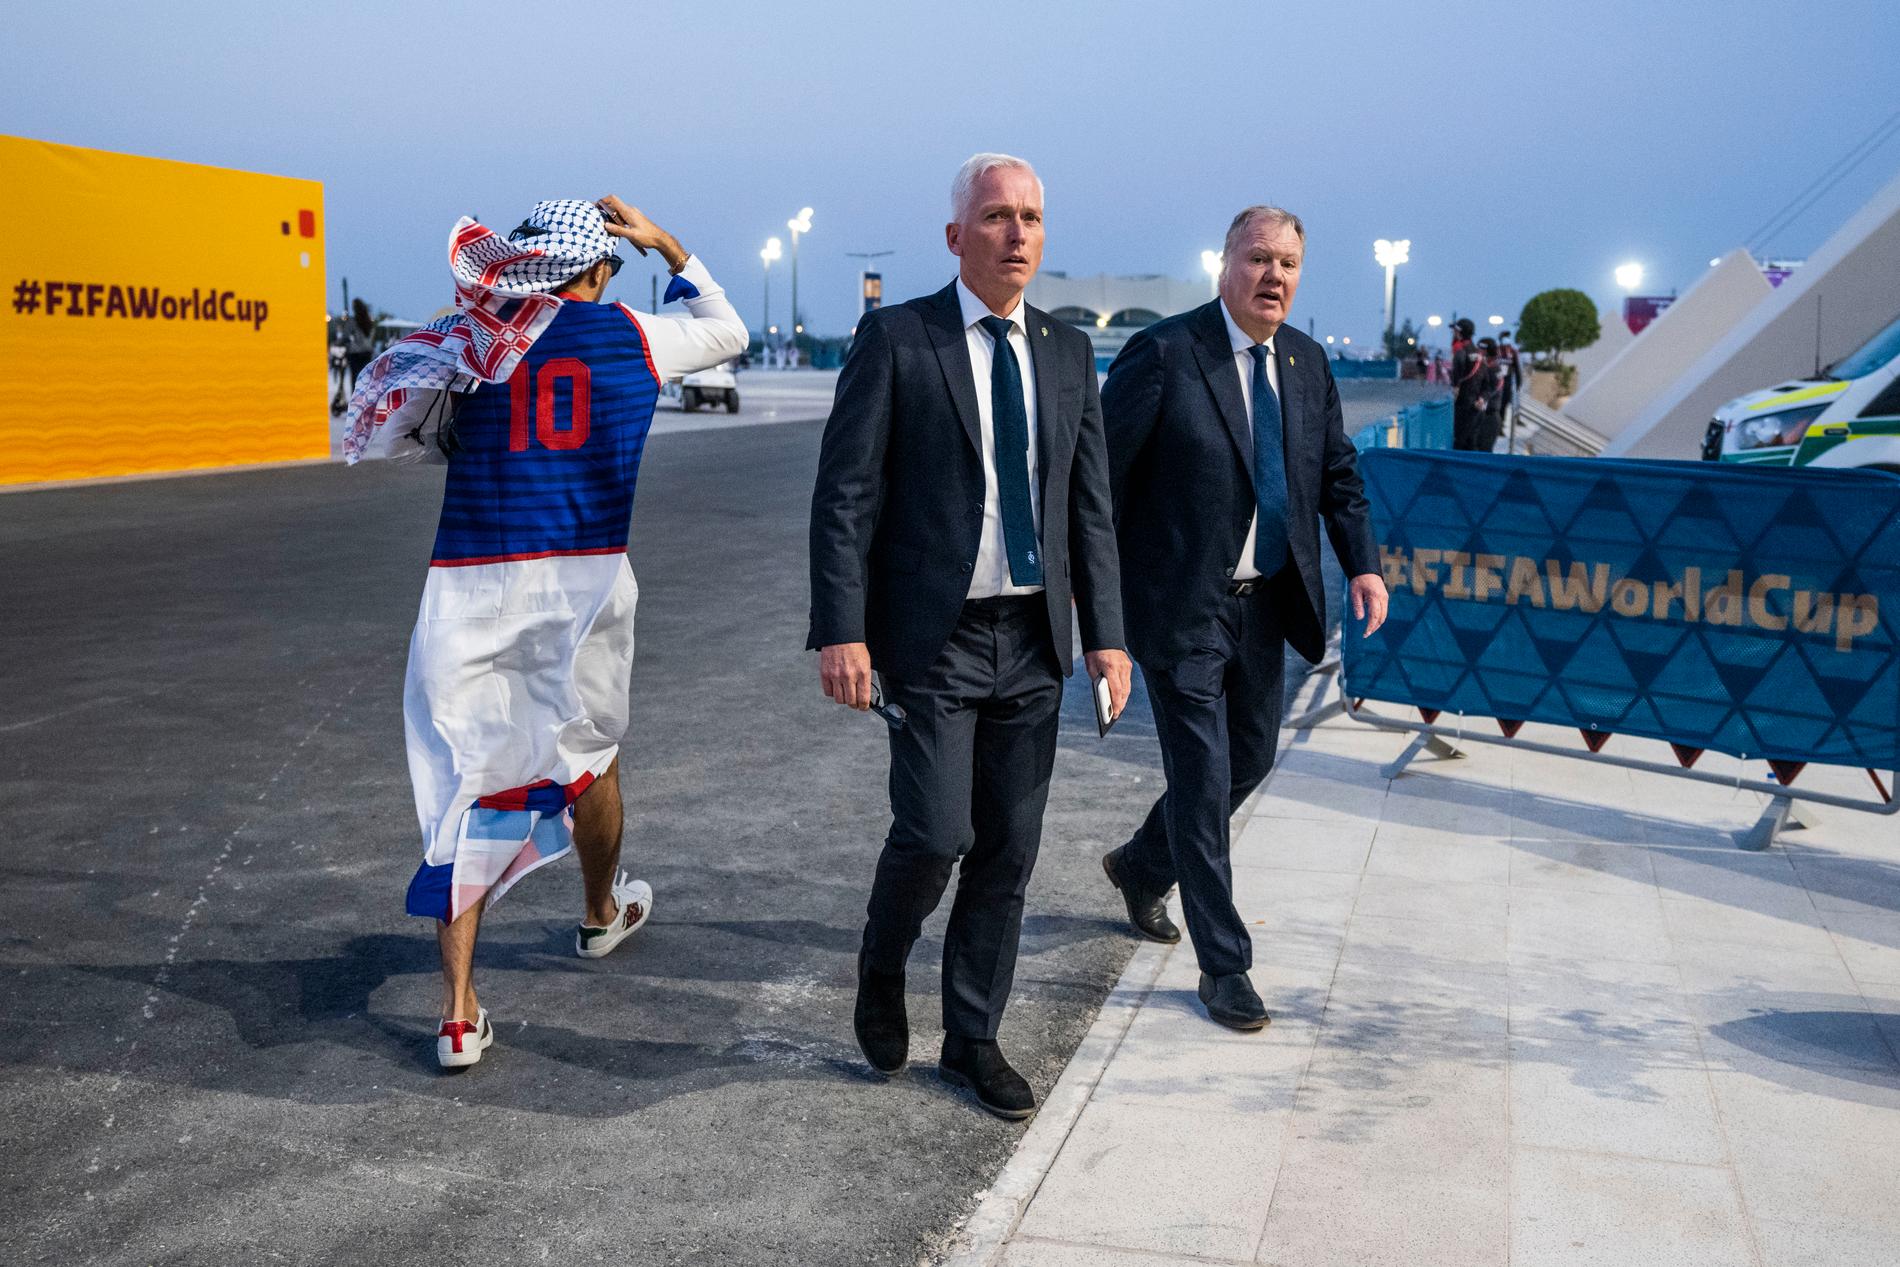 Svenska fotbollförbundets generalsekreterare Håkan Sjöstrand och Karl-Erik Nilsson, avgående ordförande för Svenska fotbollförbundet på väg till premiärmatchen mellan Qatar och Ecuador i Al Bayt Stadium i Al Khor under herrarnas fotbolls-VM 2022.